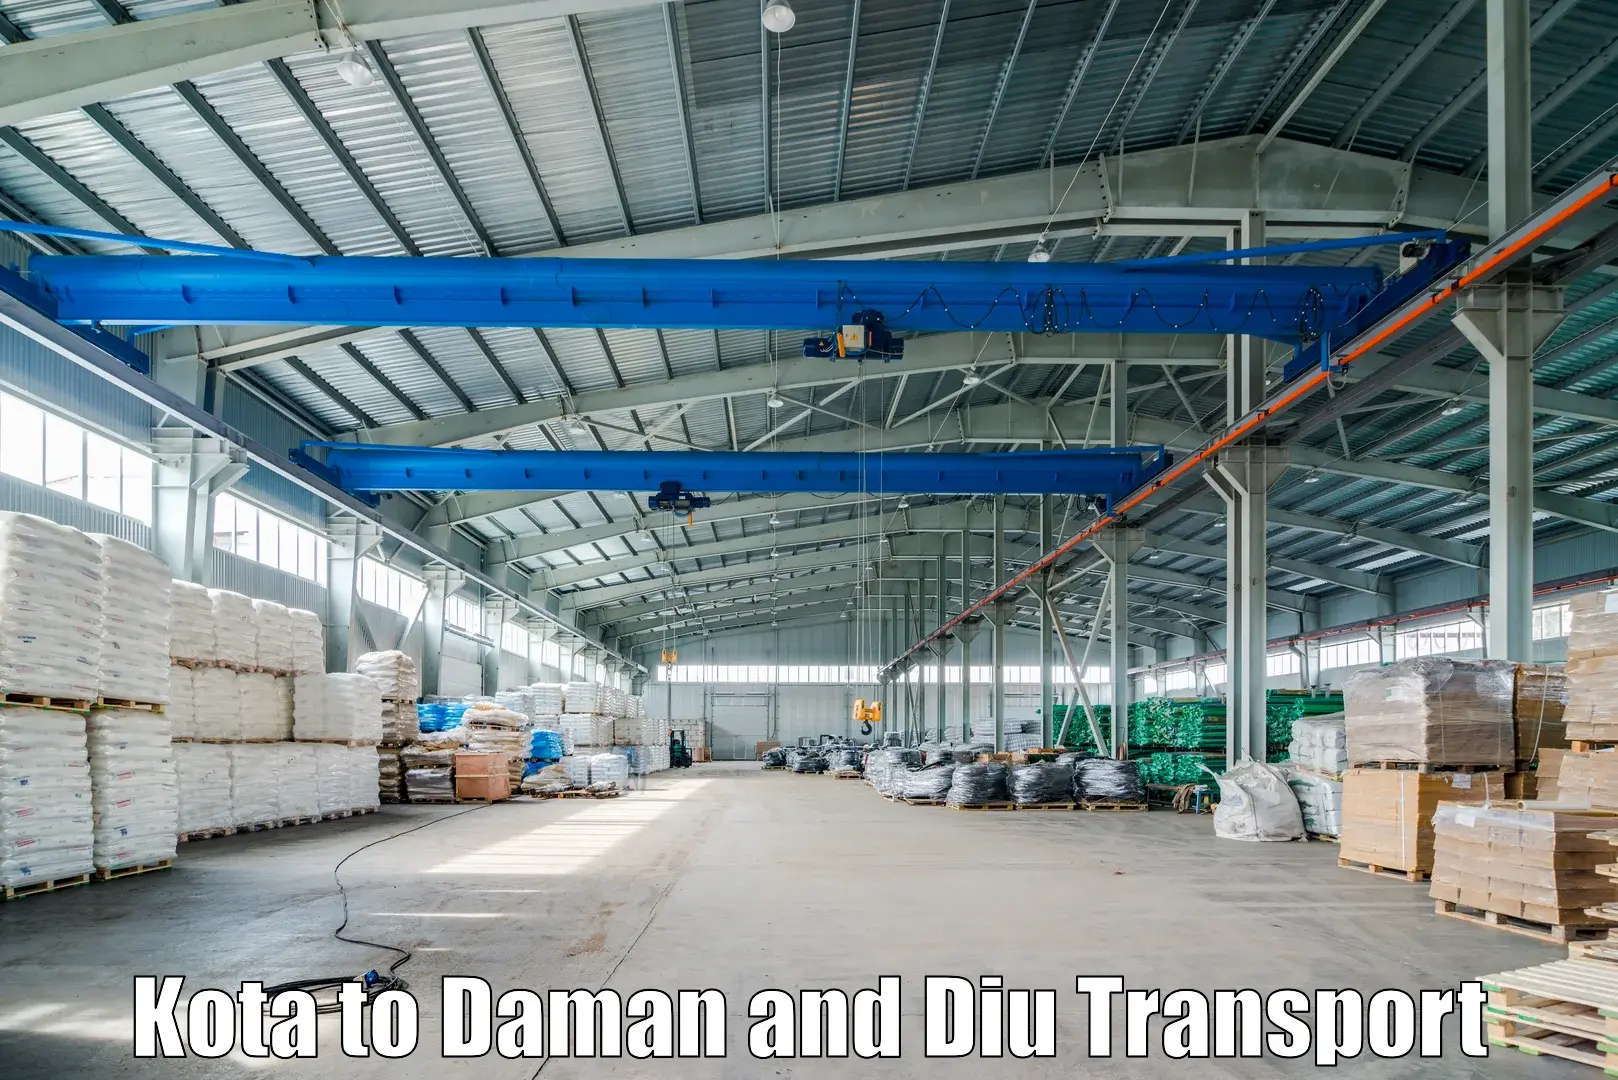 Land transport services Kota to Daman